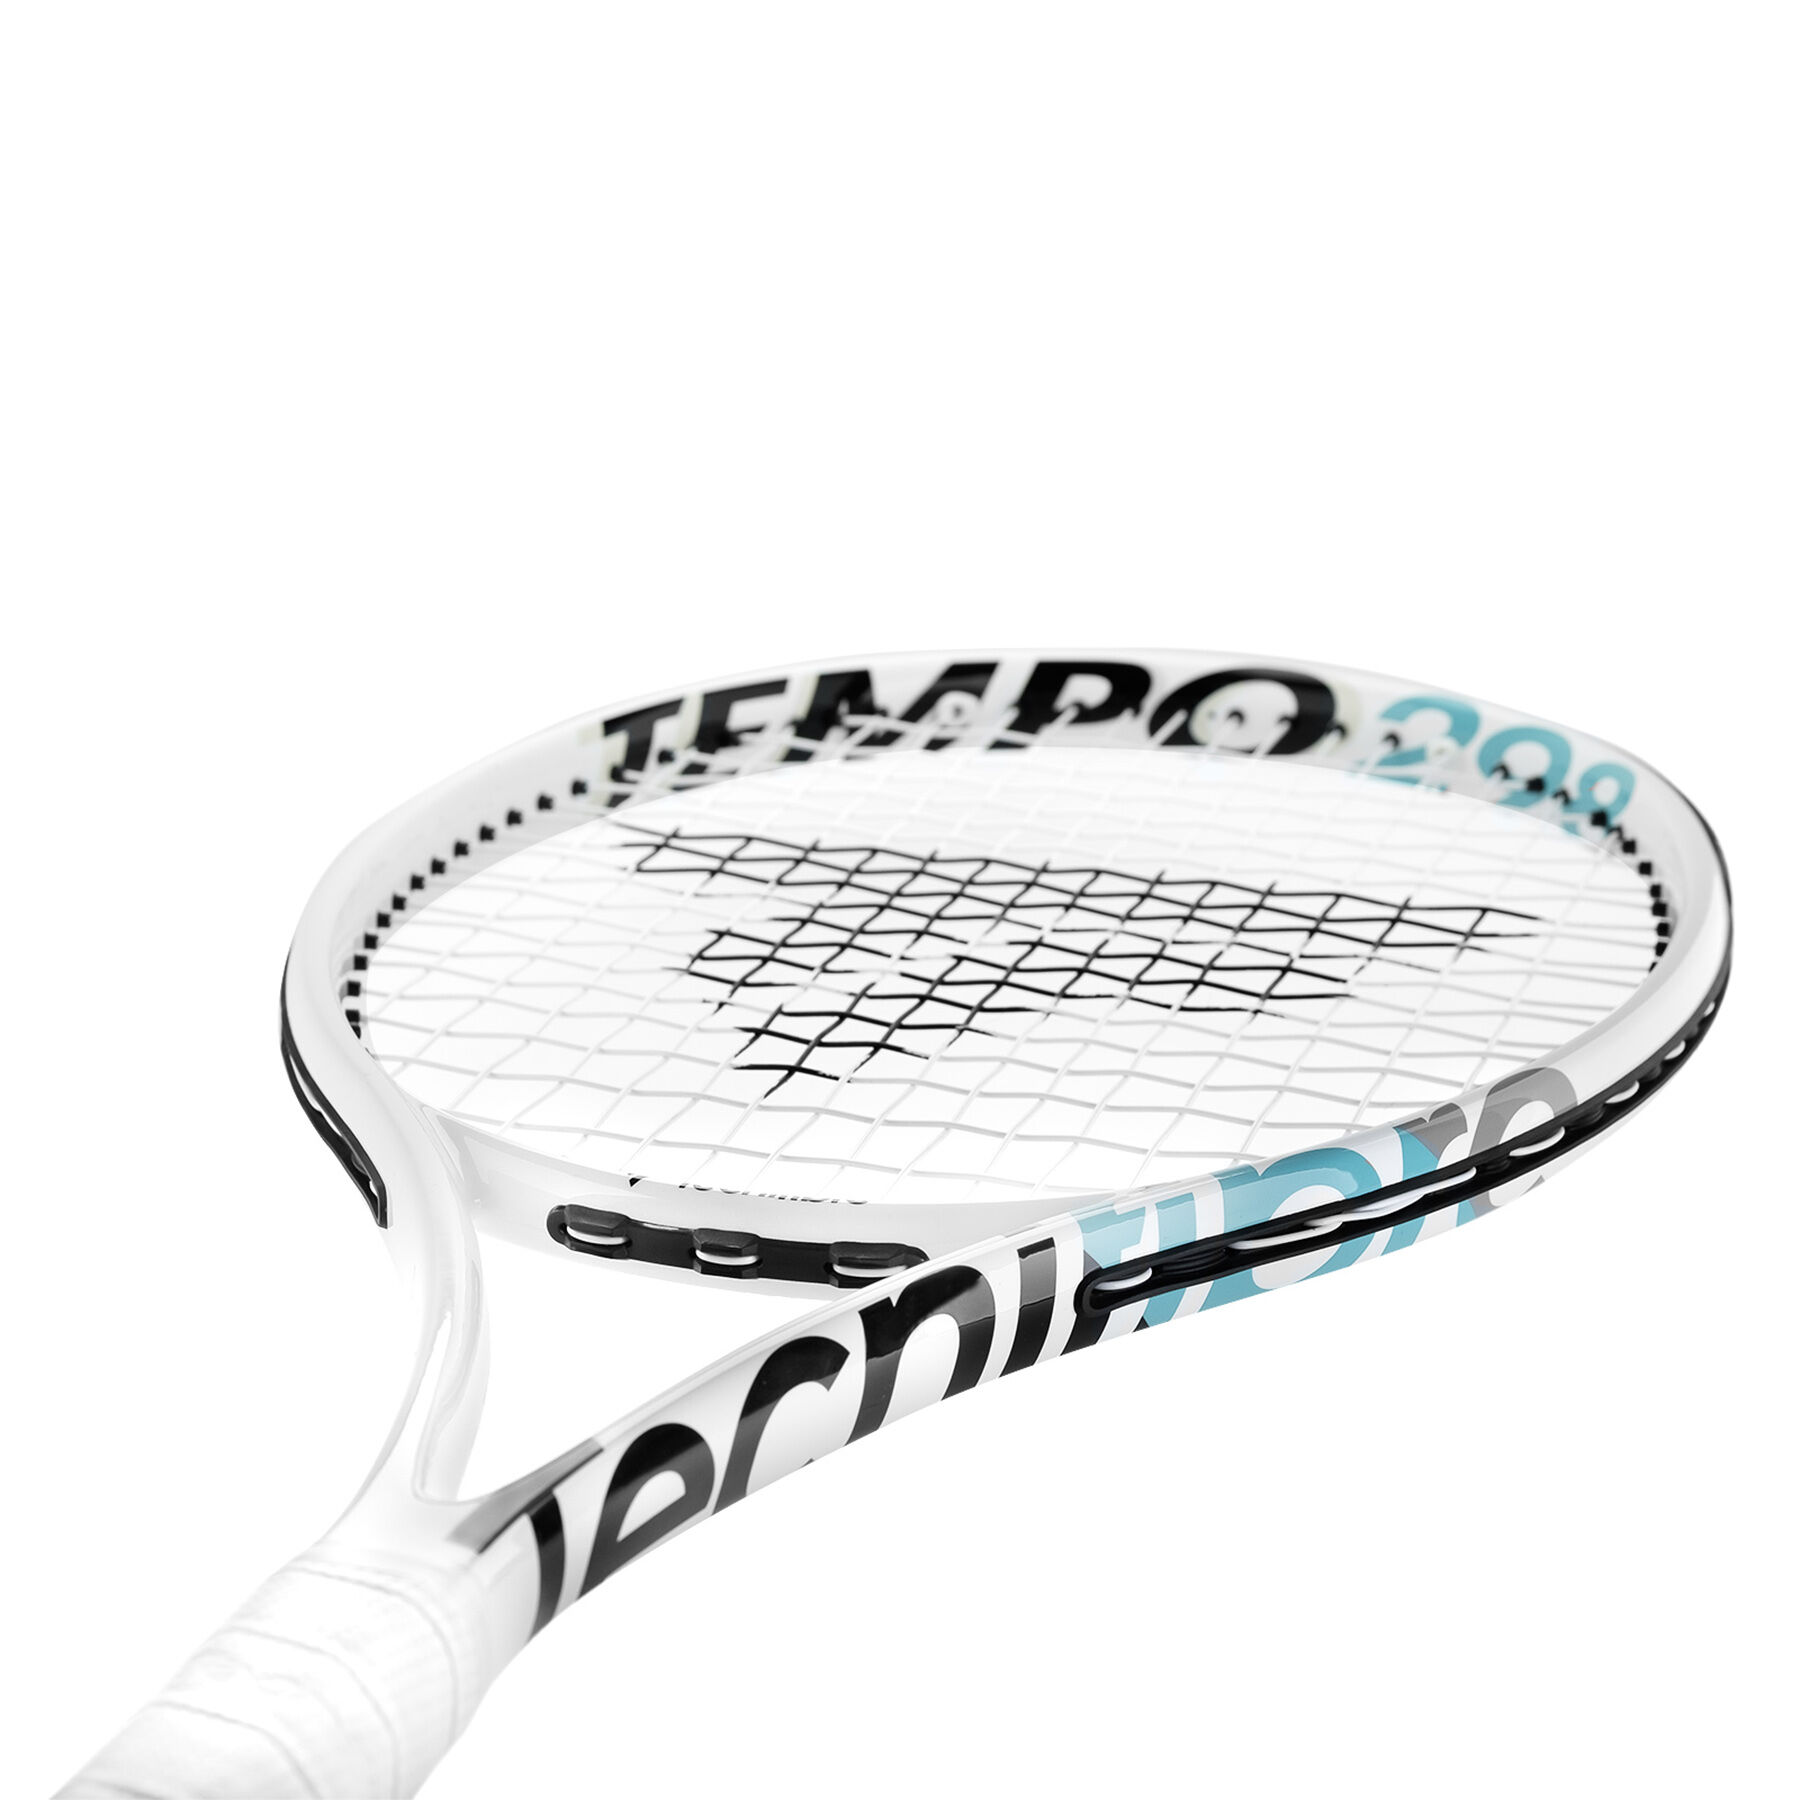 テクニファイバー TEMPO 298 IGA G2相当 テニスラケット-